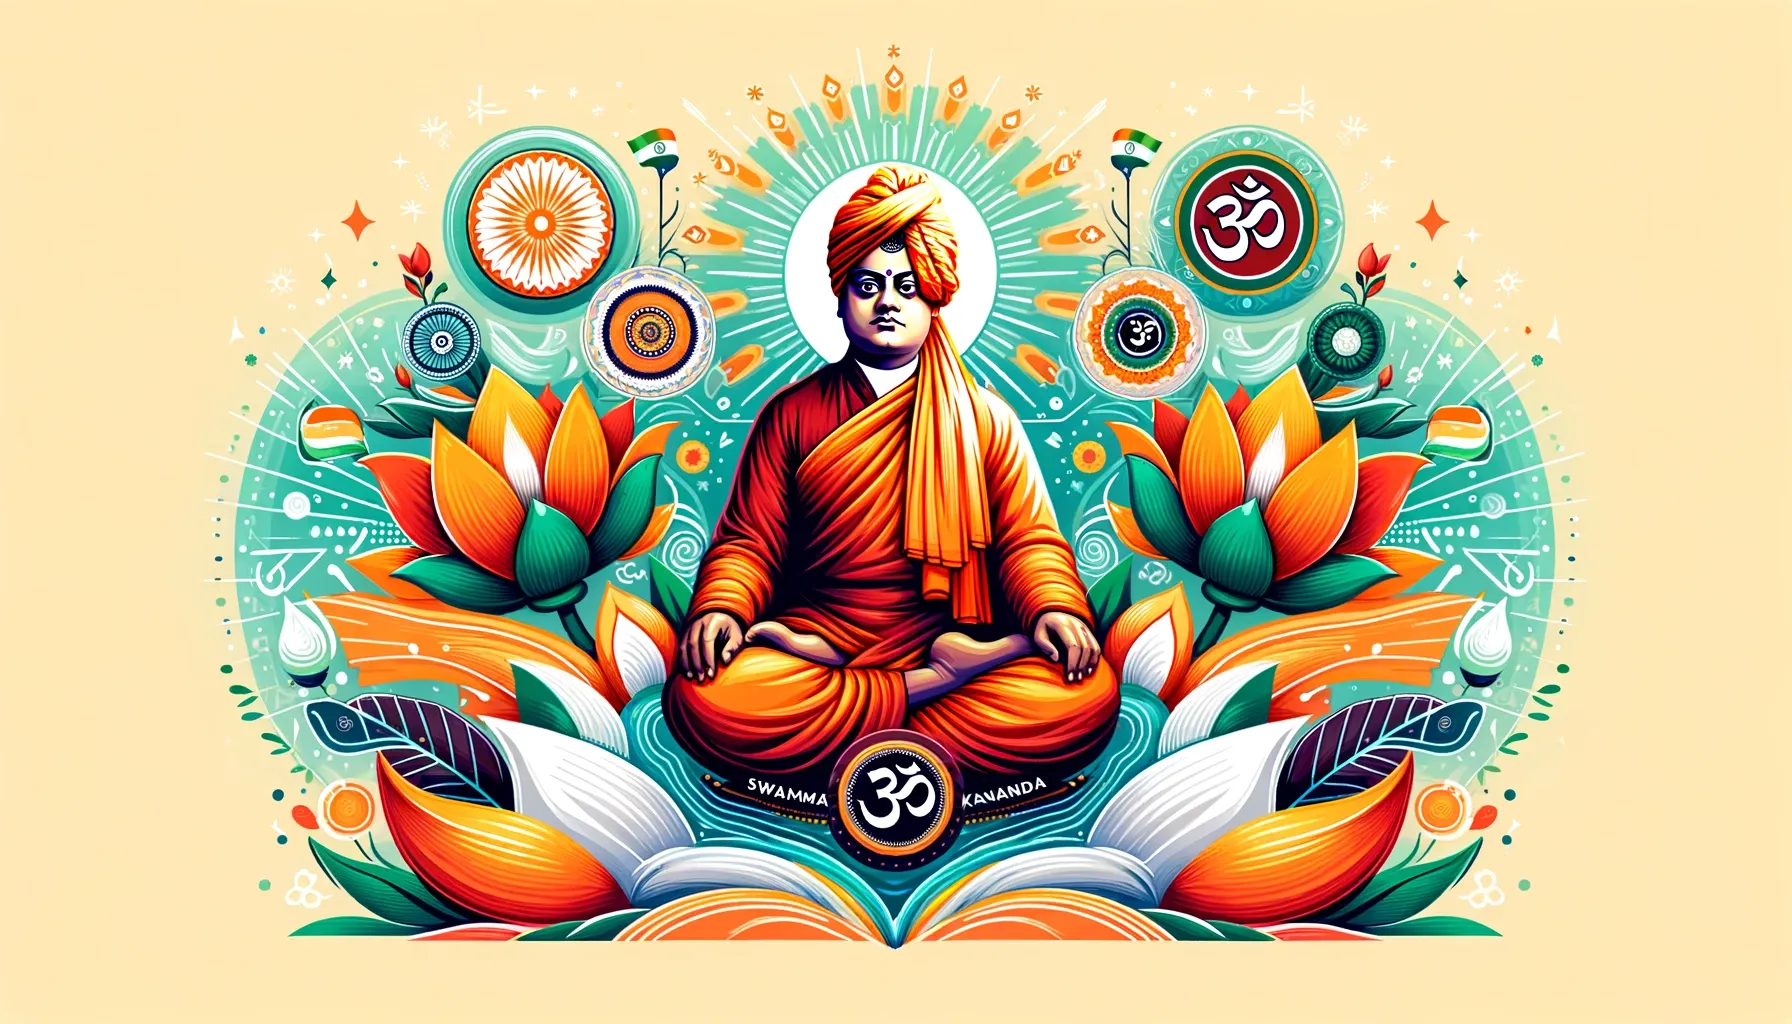 विवेकानन्द जयंती: एक आध्यात्मिक विभूति की विरासत का जश्न मनाना